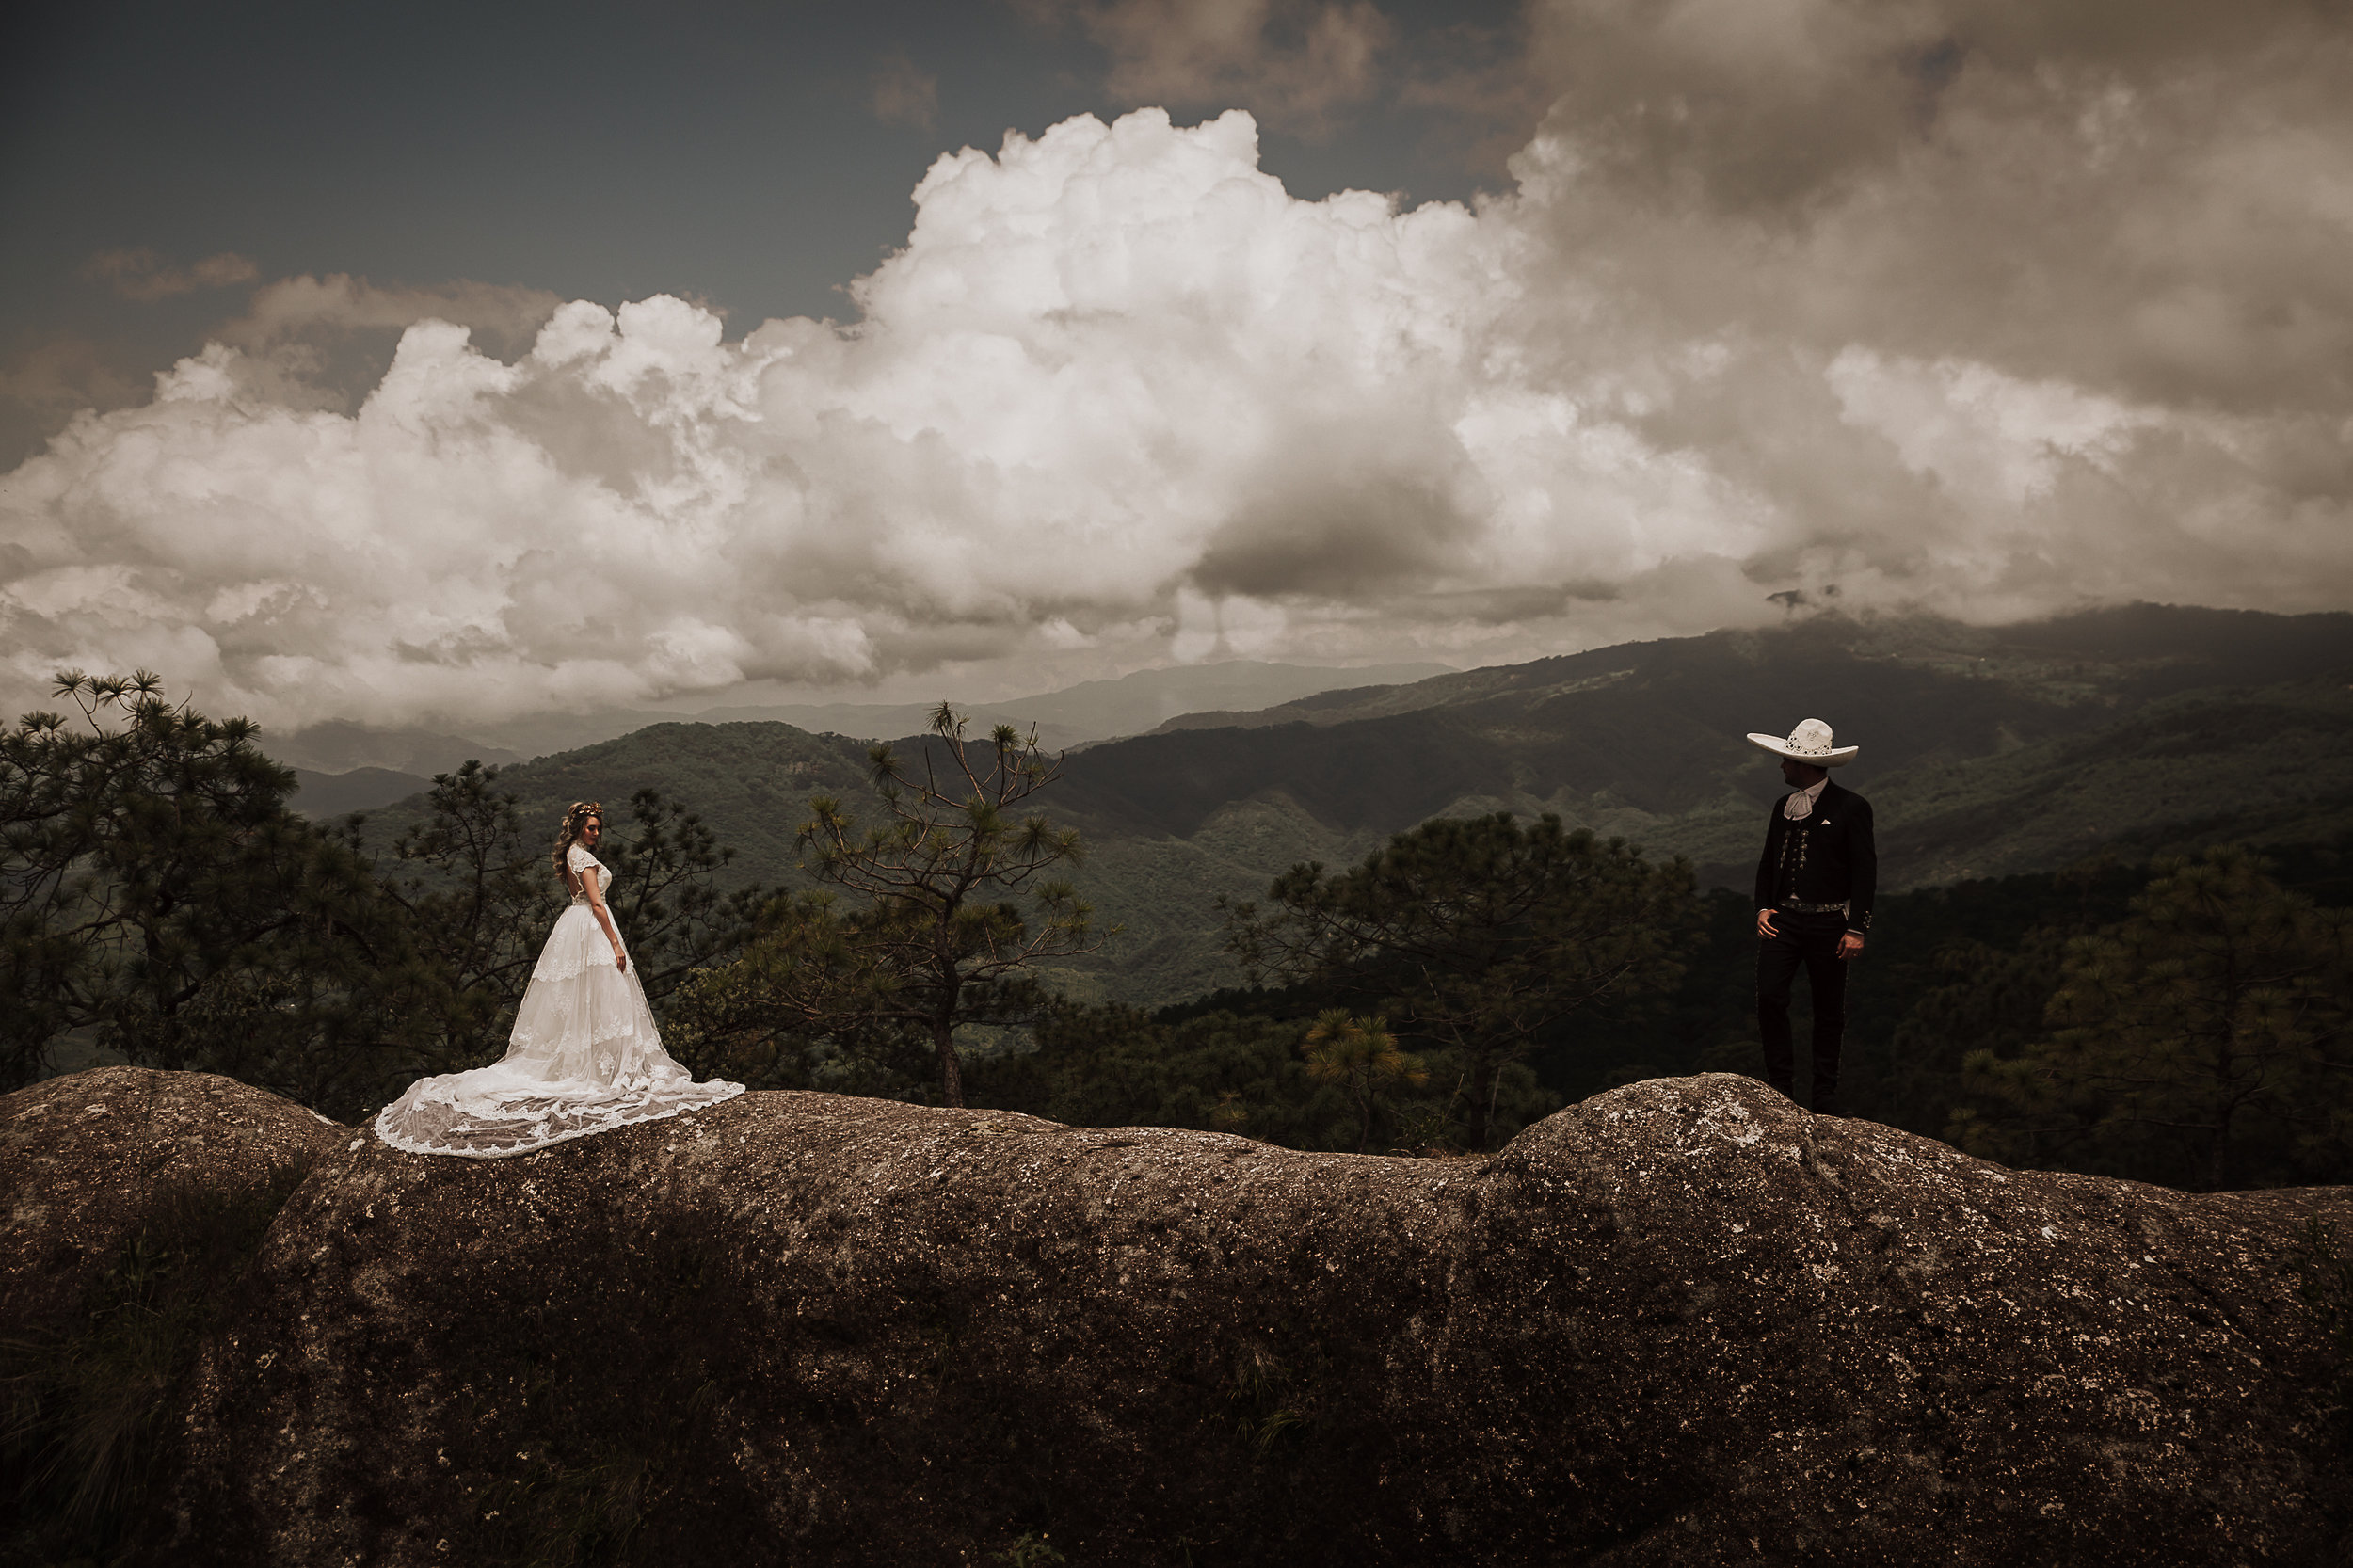 Fotografo-de-bodas-destino-Mexico-wedding-destination-photographer-san-miguel-de-allende-gto-guanajuato-queretaro-boho-bohemian-bohemio-chic-wedding-editorial-wedding-carotida-photographer